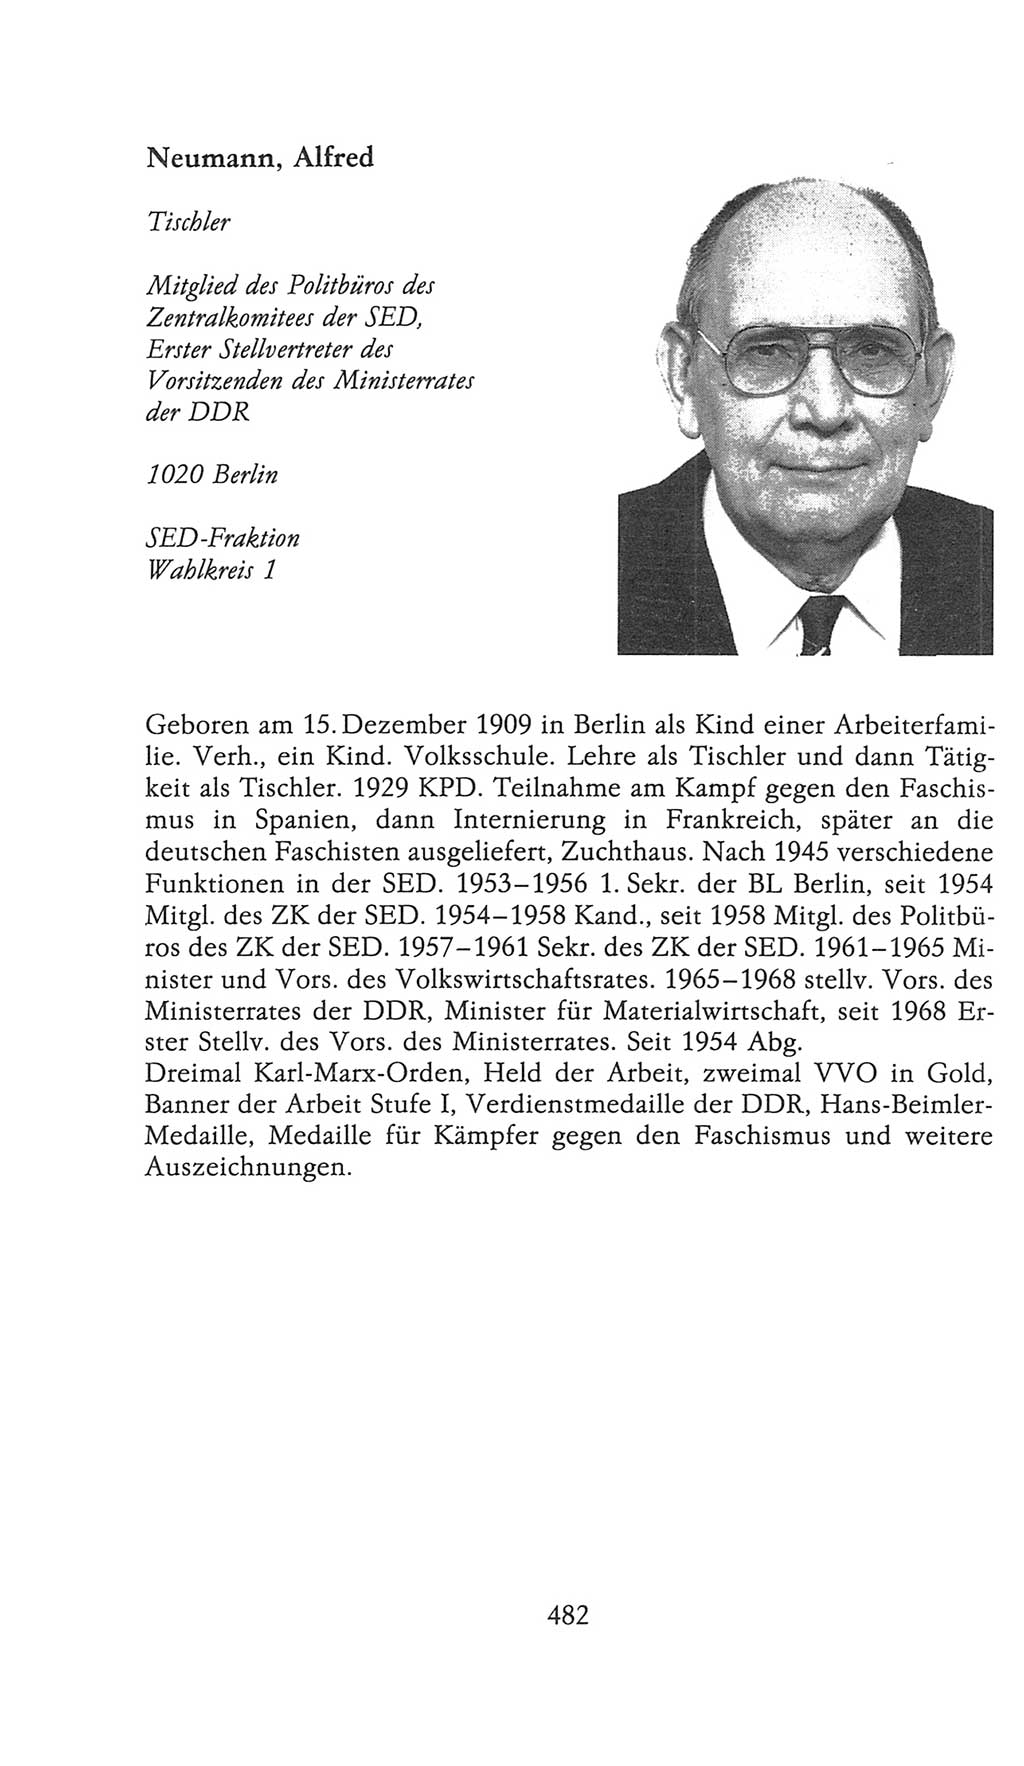 Volkskammer (VK) der Deutschen Demokratischen Republik (DDR), 9. Wahlperiode 1986-1990, Seite 482 (VK. DDR 9. WP. 1986-1990, S. 482)